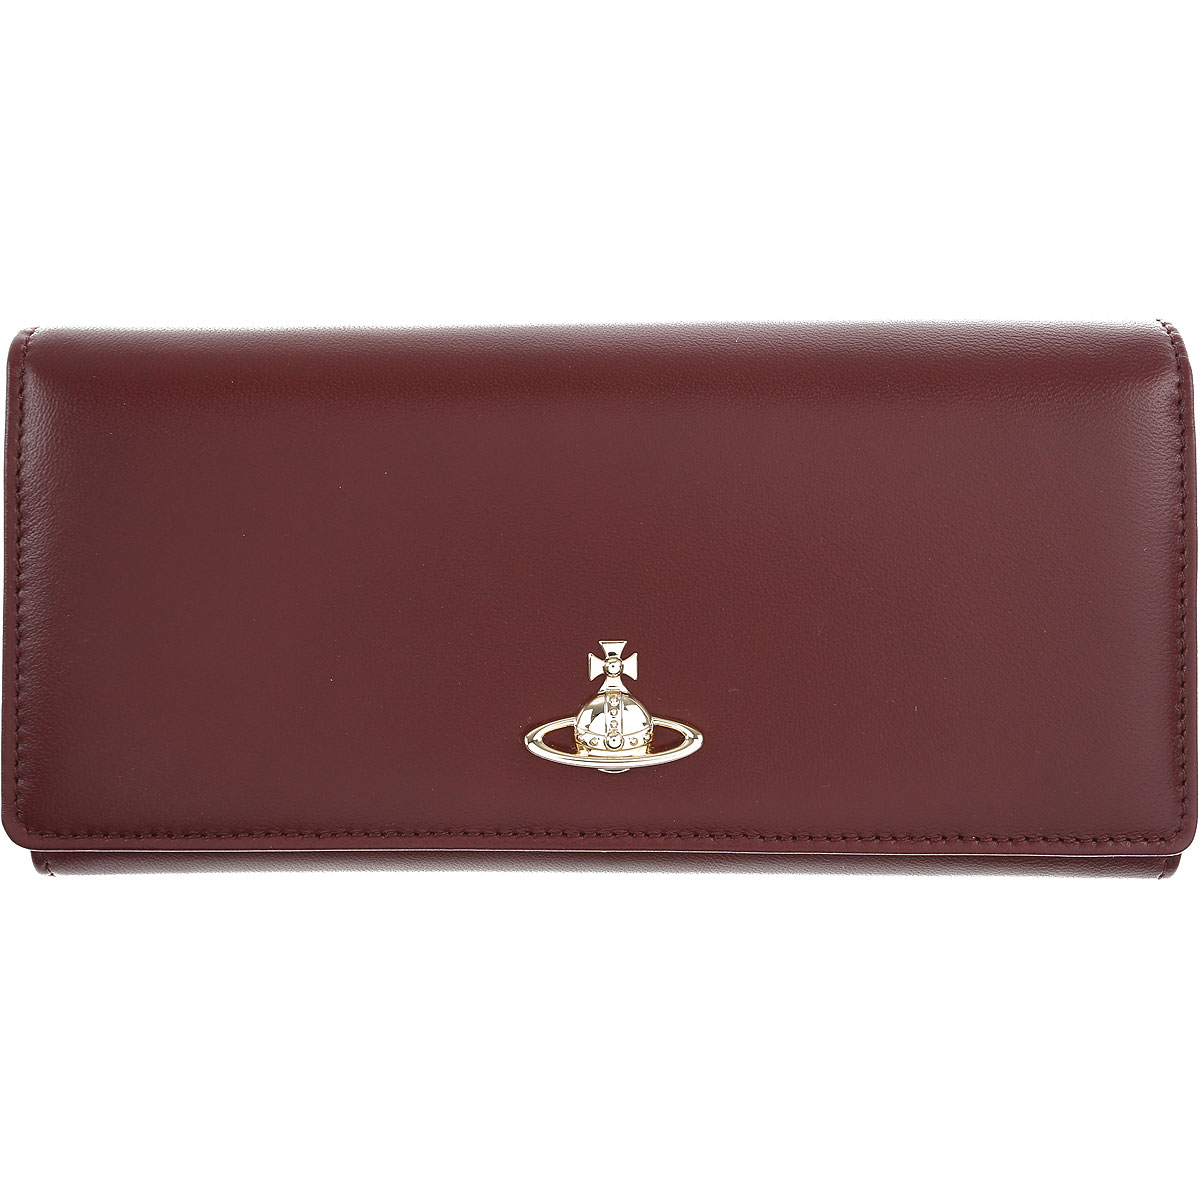 Vivienne Westwood Brieftasche für Damen, Portemonnaie, Geldbörsen, Geldbeutel Günstig im Sale, Leder, 2017